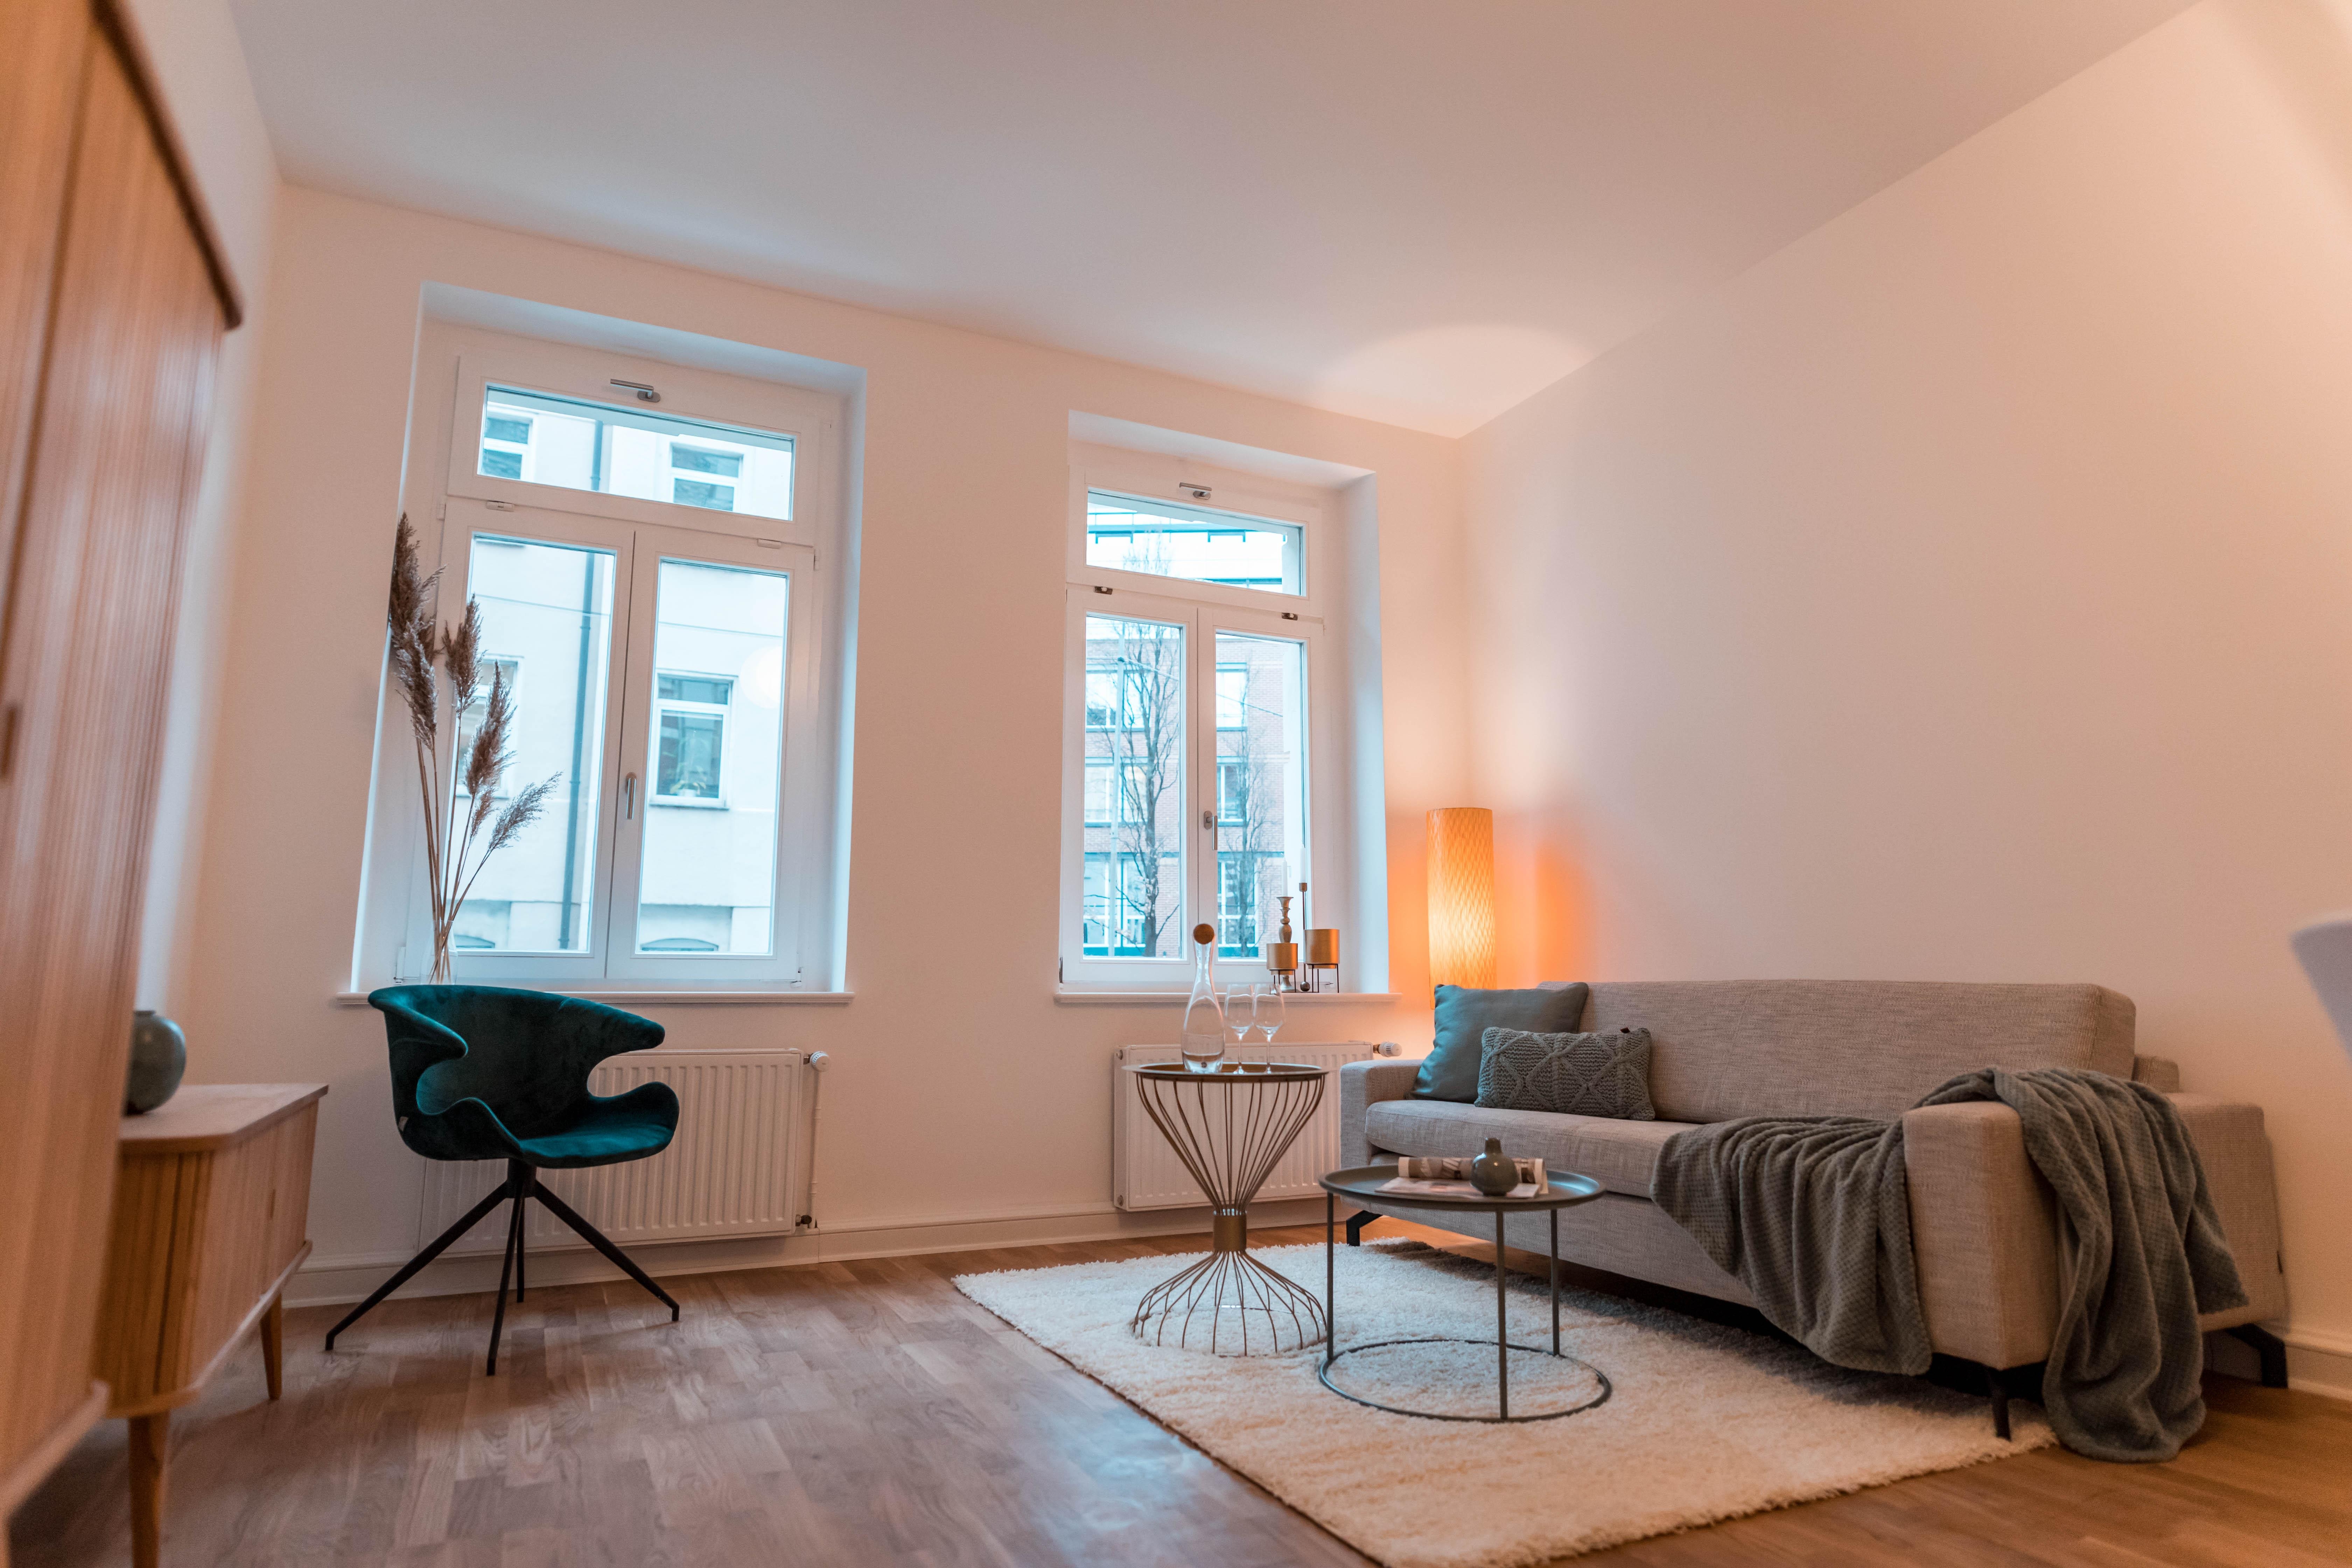 #homestaging #musterwohnung #Leipzig #Wohnbereich #livingroom #Wohnzimmer